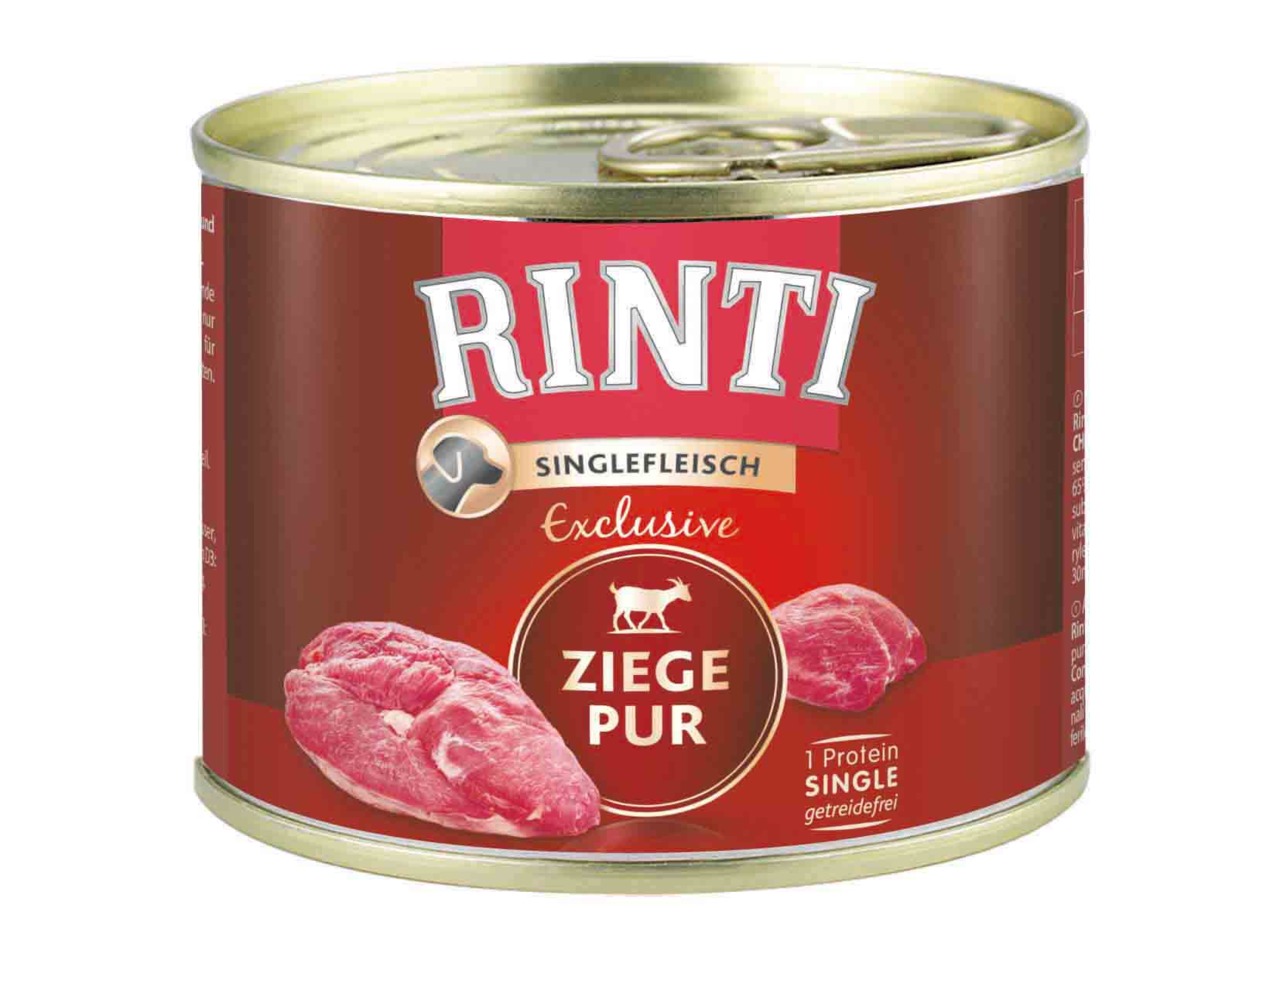 Sparpaket 24 x 185 g Rinti Singlefleisch Exclusive Ziege Pur Hunde Nassfutter